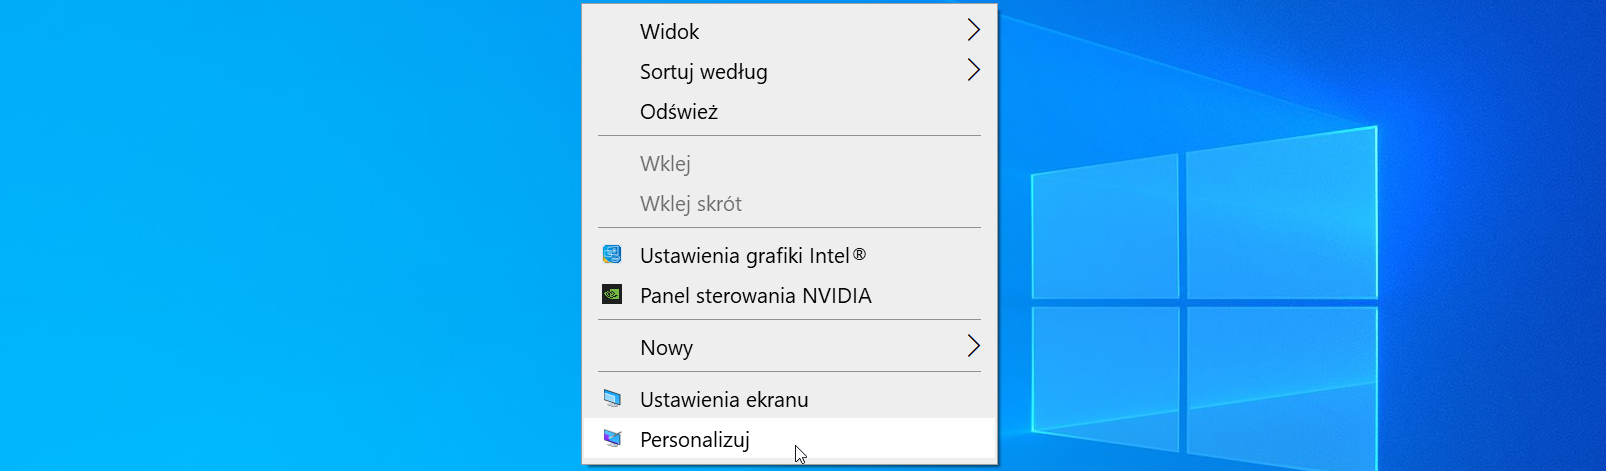 Ilustracja przedstawia pulpit systemu Windows 10 z otworzonym menu kontekstowym. Pozycje od góry to: Widok, Sortuj według, Odśwież, Wklej, Wklej skrót, Ustawienia grafiki Intel, Panel sterowania NVIDIA, Nowy, Ustawienia ekranu, Personalizuj (podświetlone kursorem).